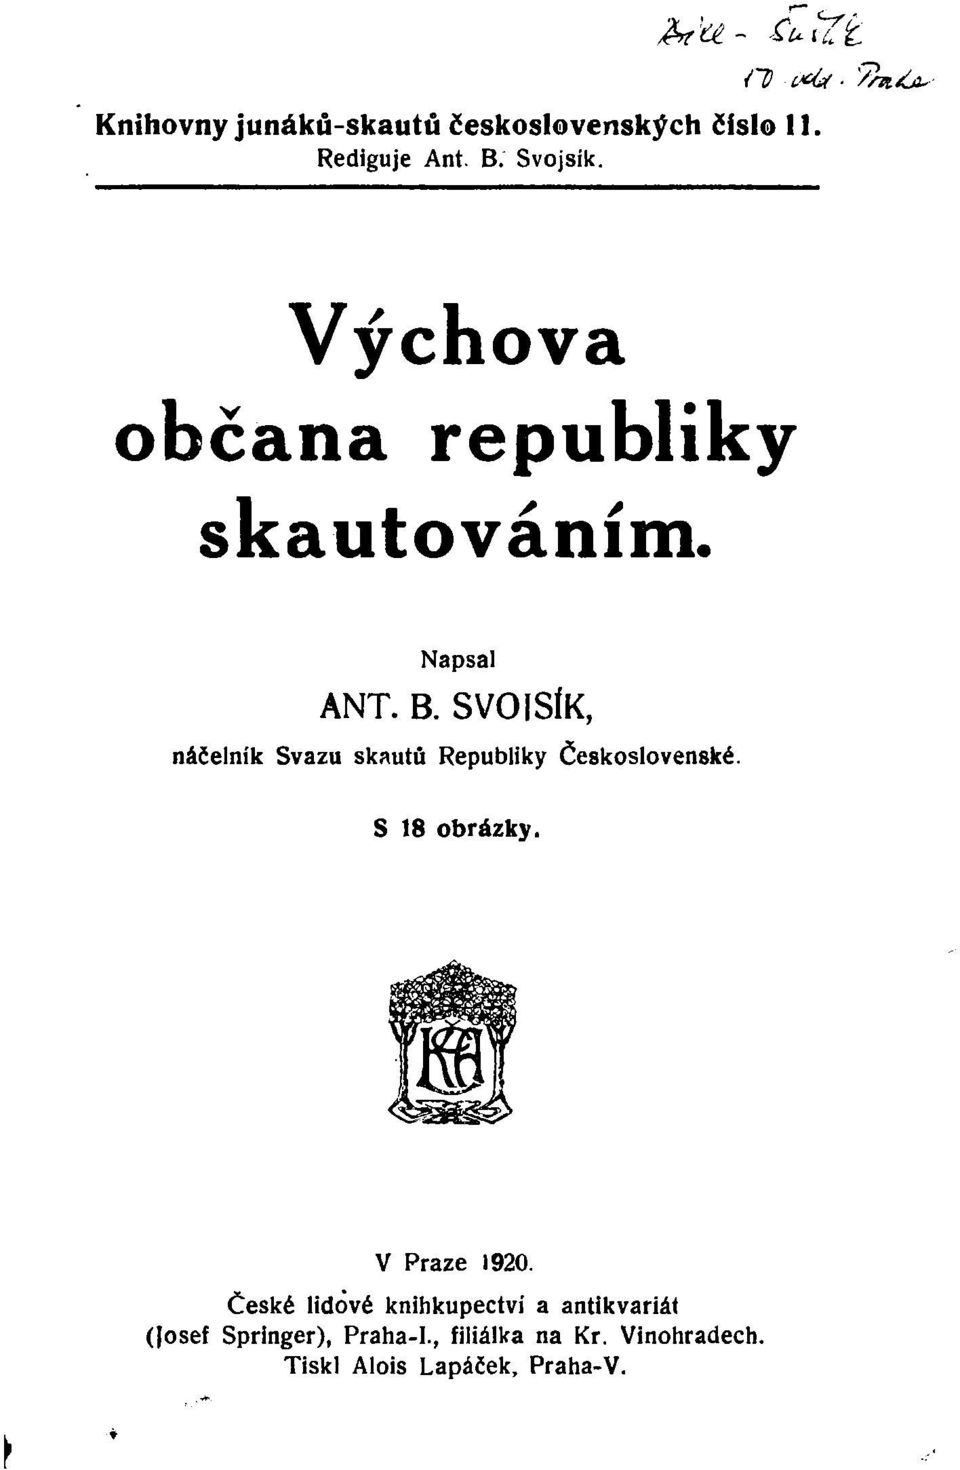 SVOISÍK, náčelník Svazu skautů Republiky Československé. S 18 obrázky. V Praze 1920.